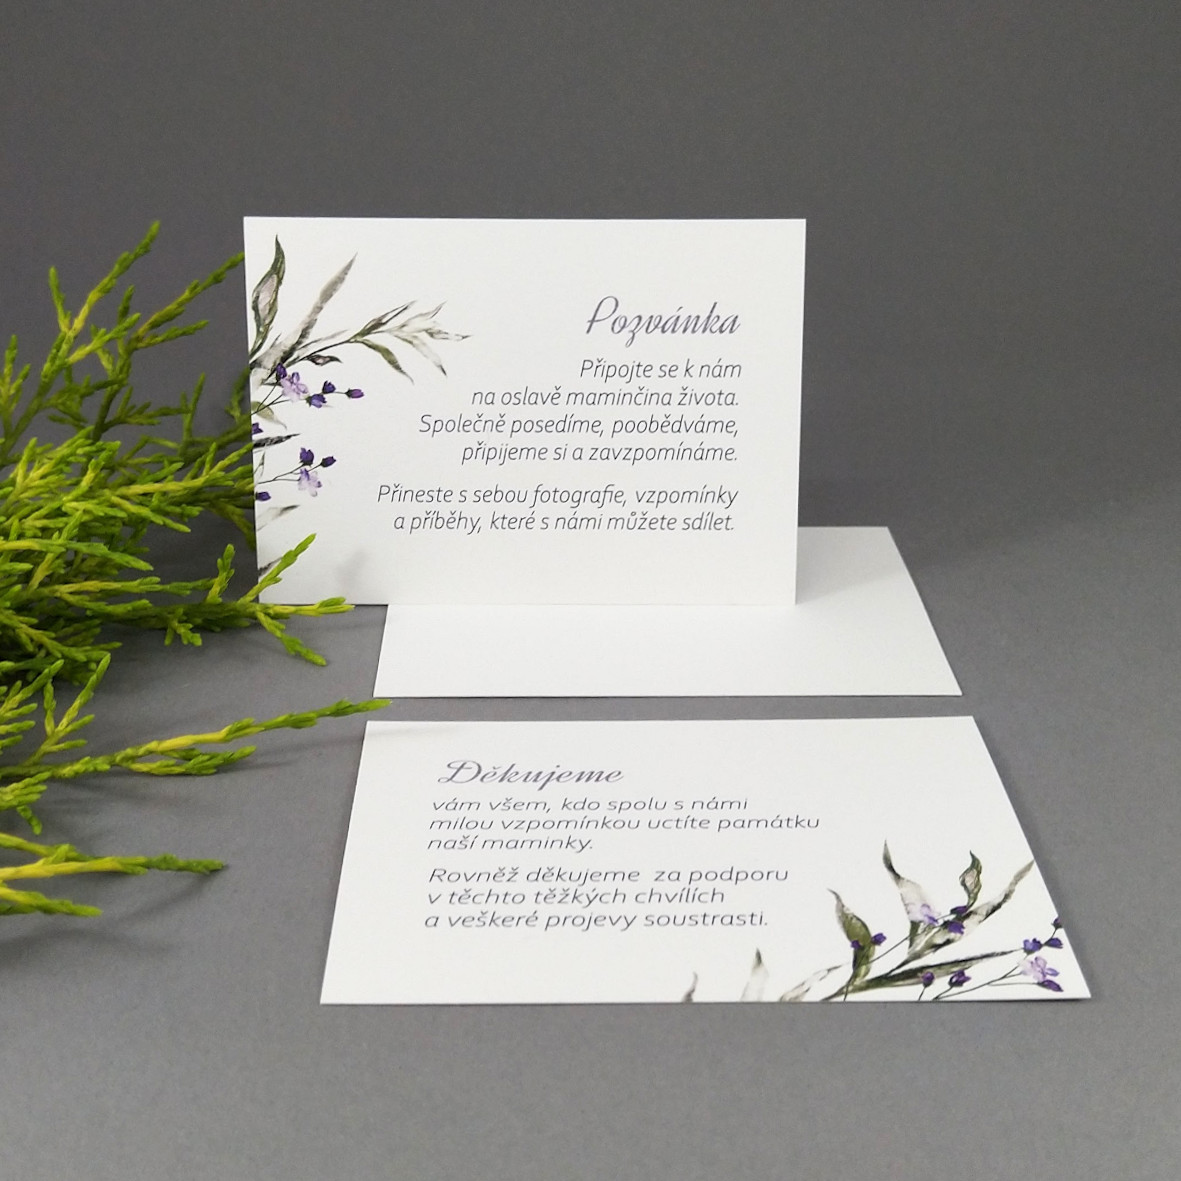 Pozvánka, informační karta – s motivem ratolesti a drobných fialových květů, formát 100 × 70 mm, jednostranná